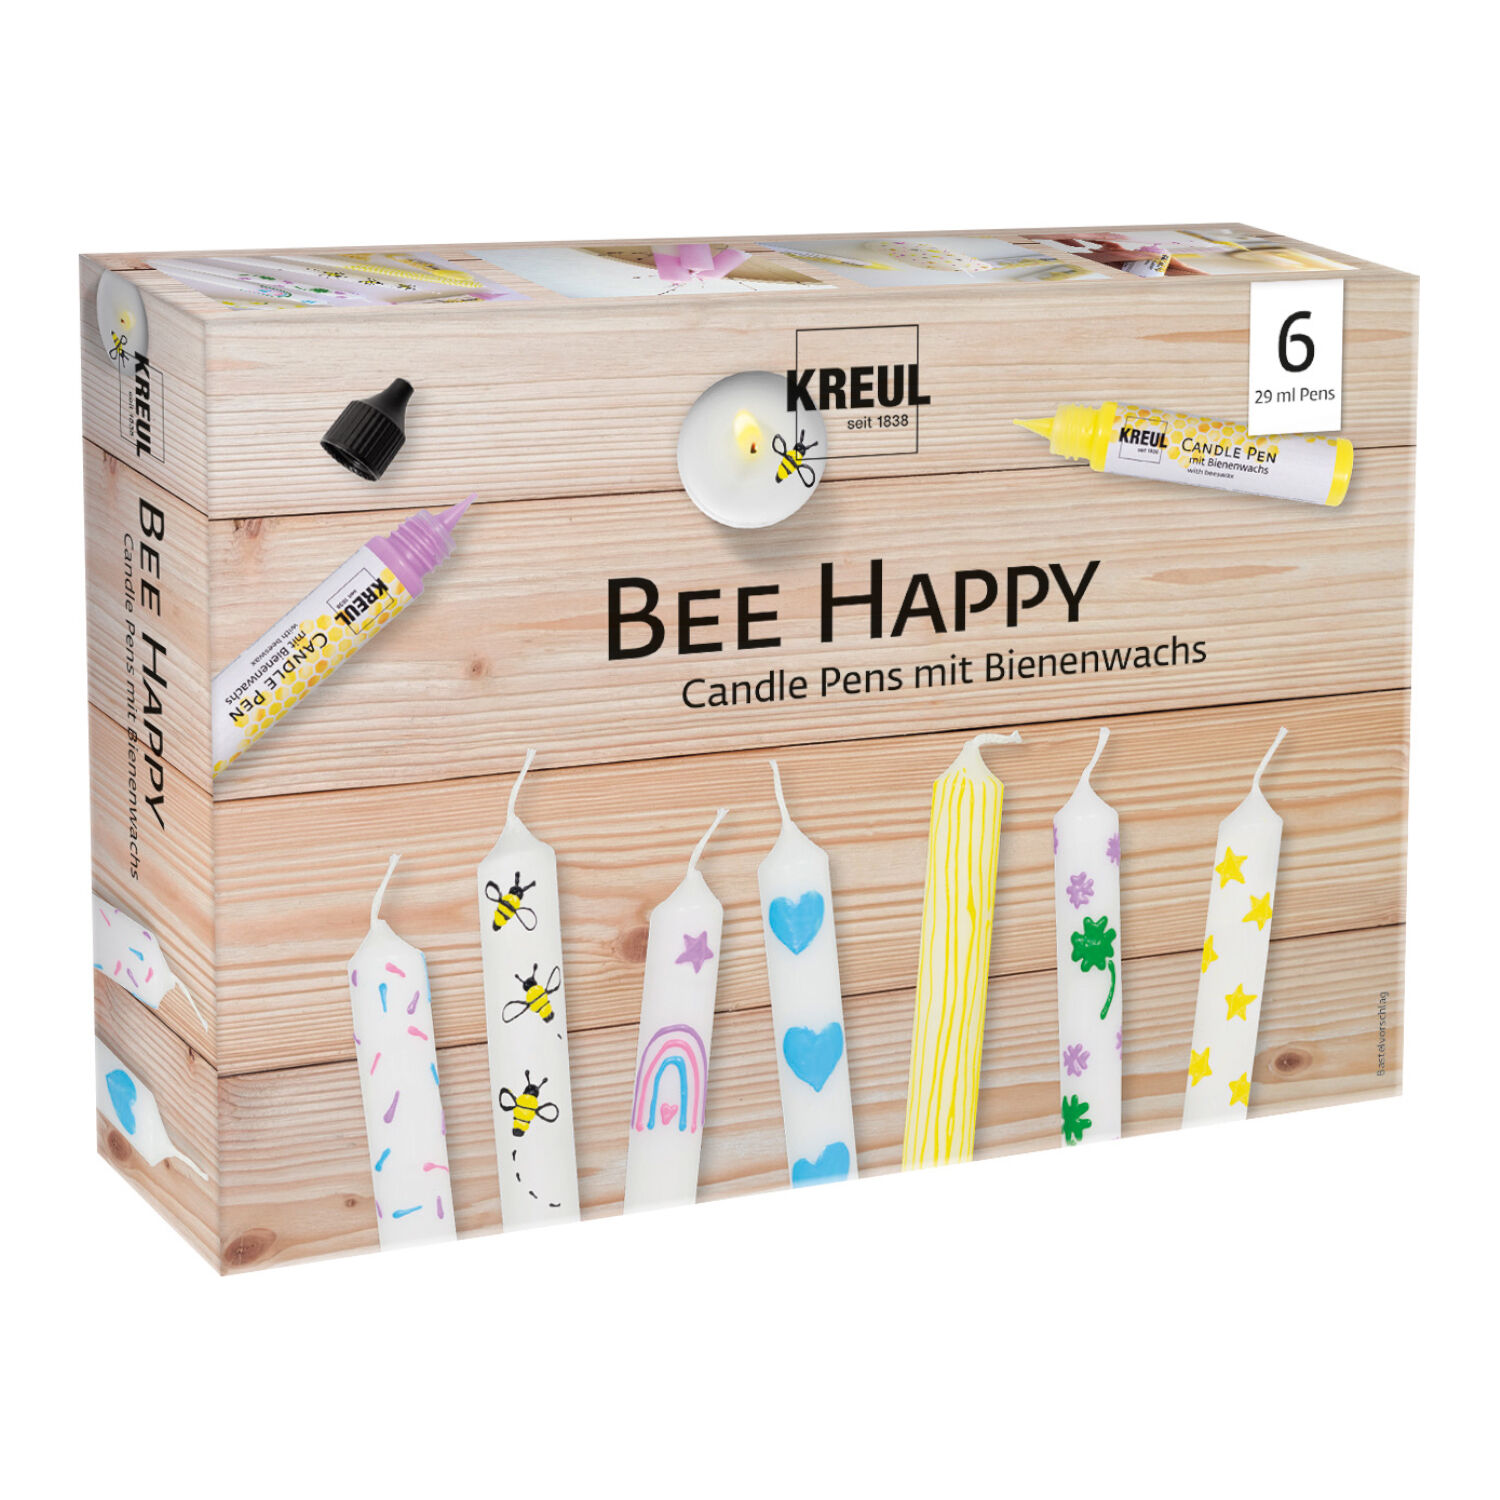 NEU KREUL Candle Pen / Kerzen-Stift 6er Set Bee Happy